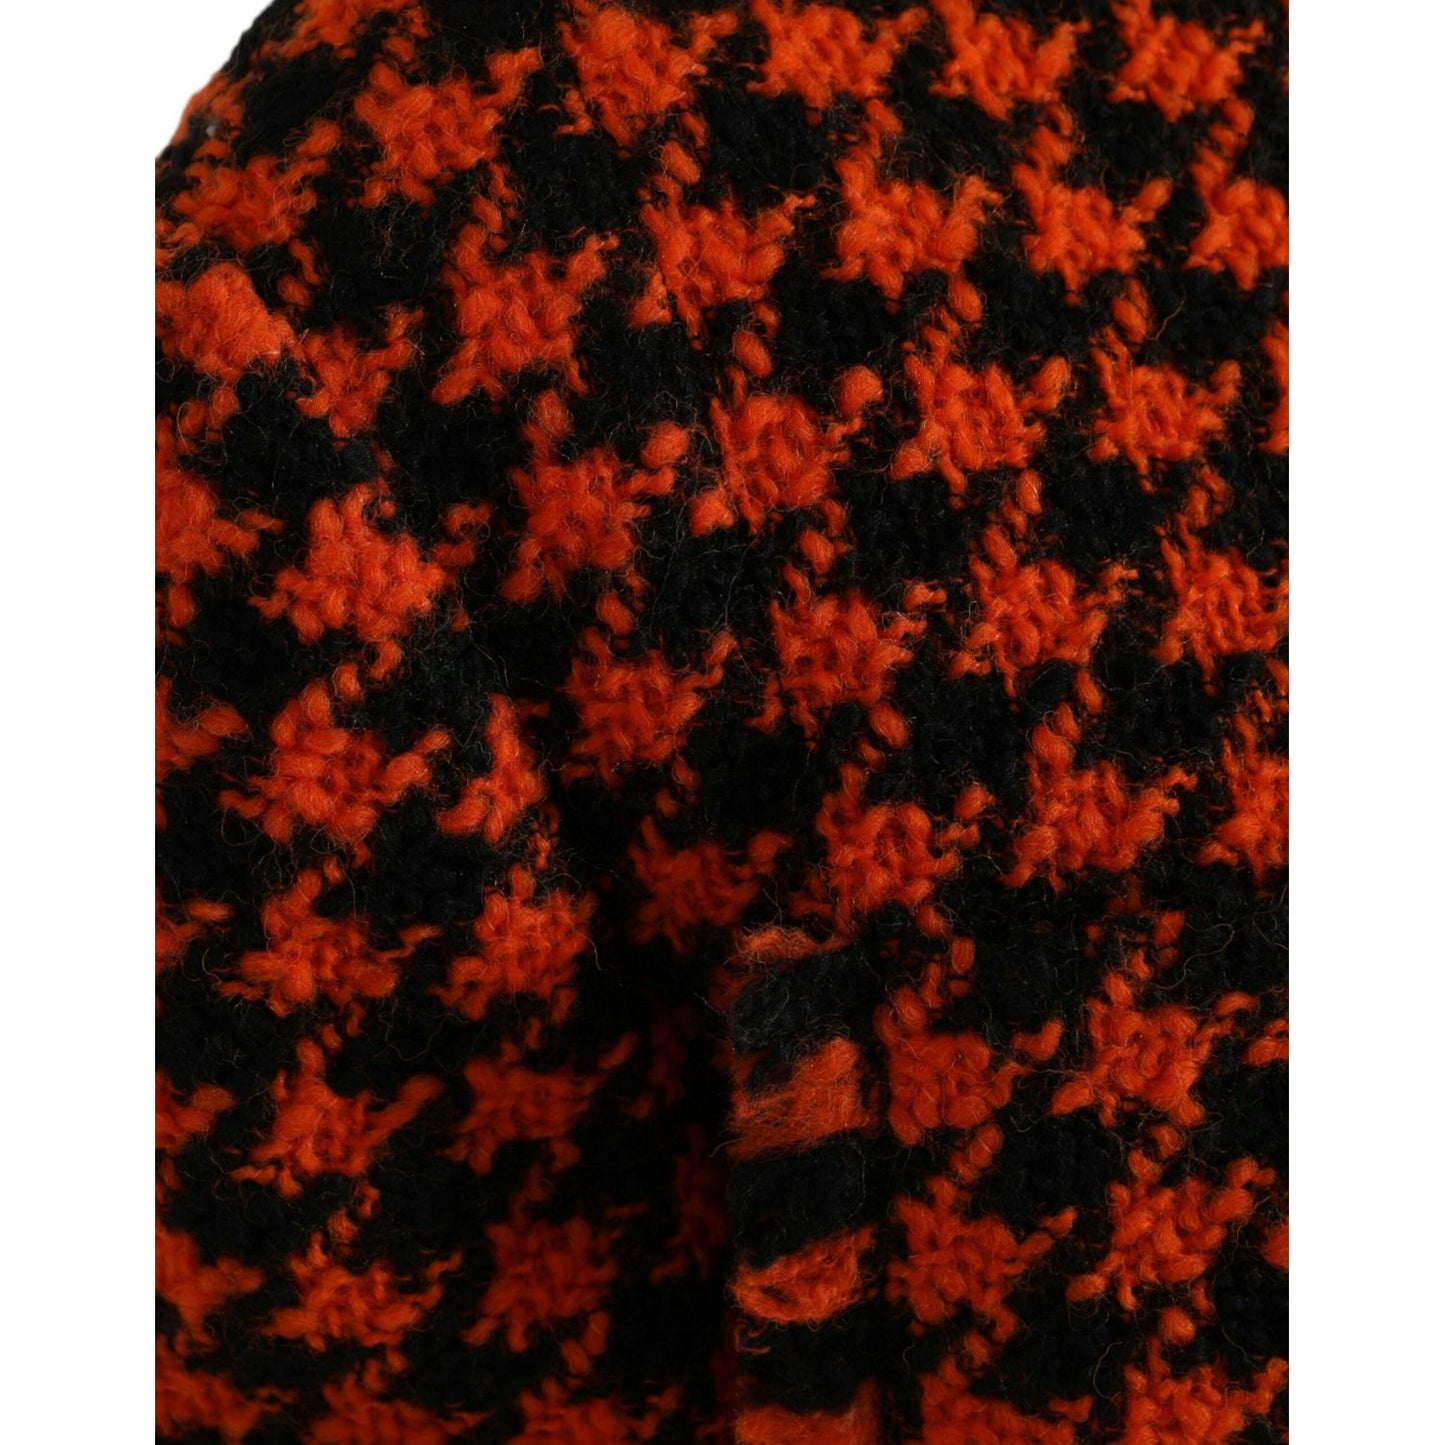 Dolce & Gabbana Elegant Houndstooth Long Coat in Vibrant Orange orange-houndstooth-long-sleeve-coat-jacket